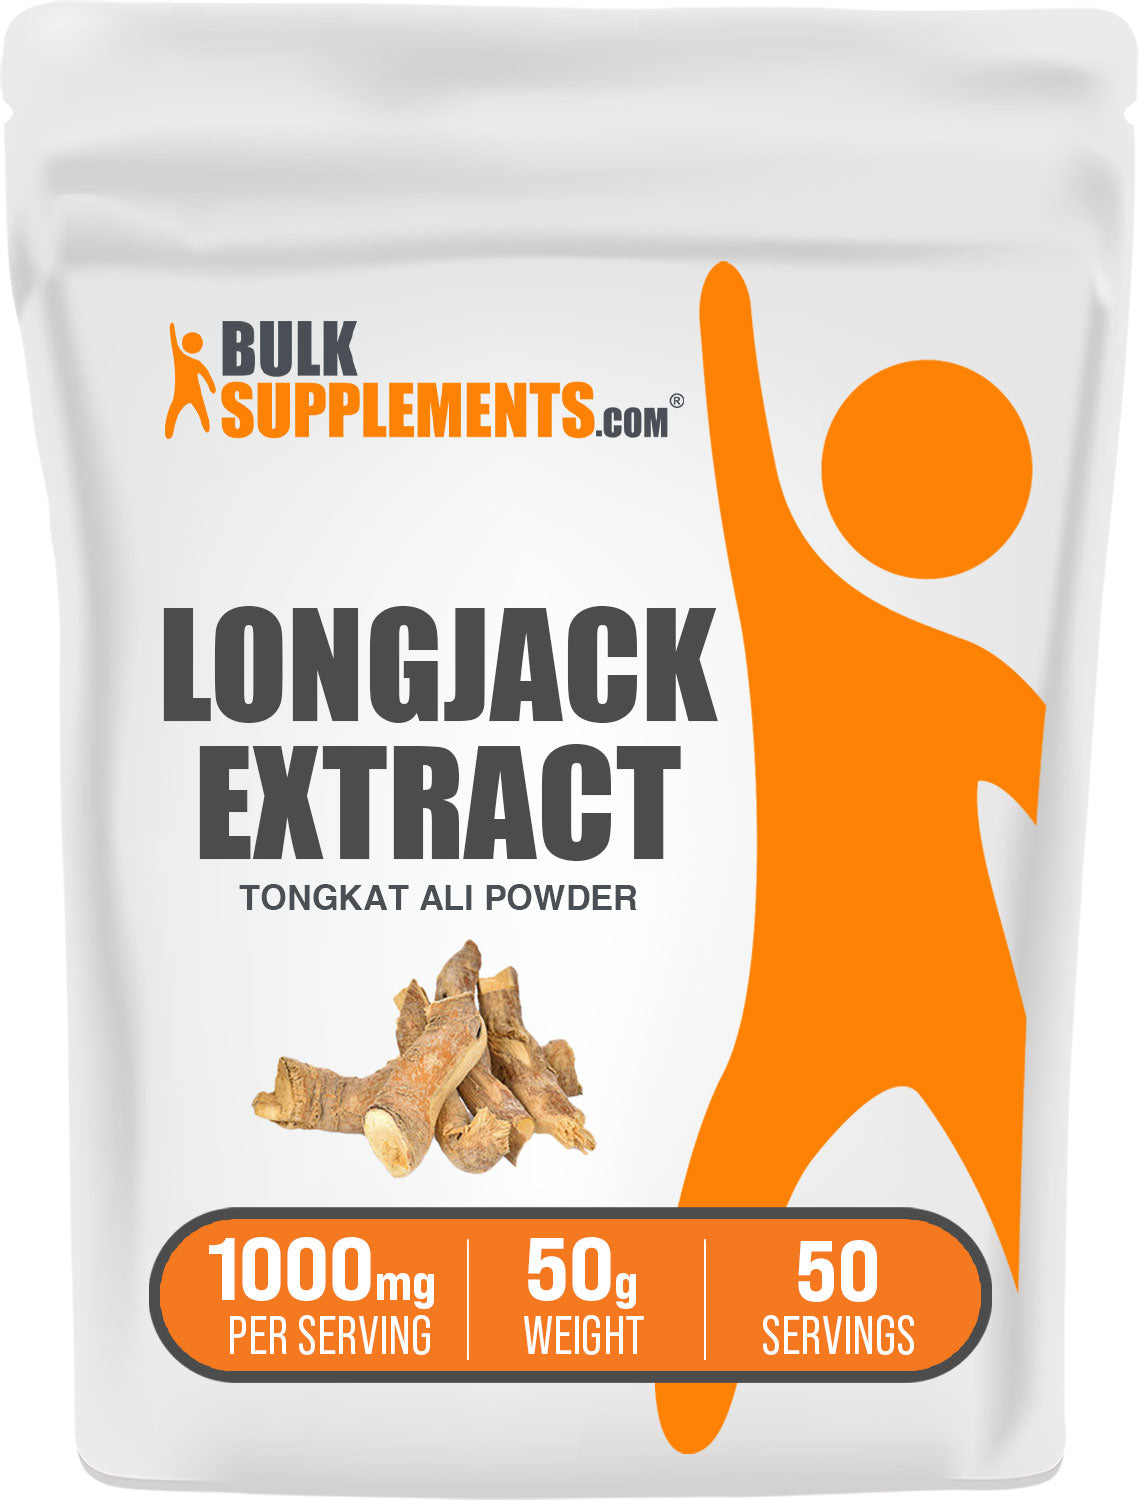 Longjack Extract Tongkat Ali Powder 50g